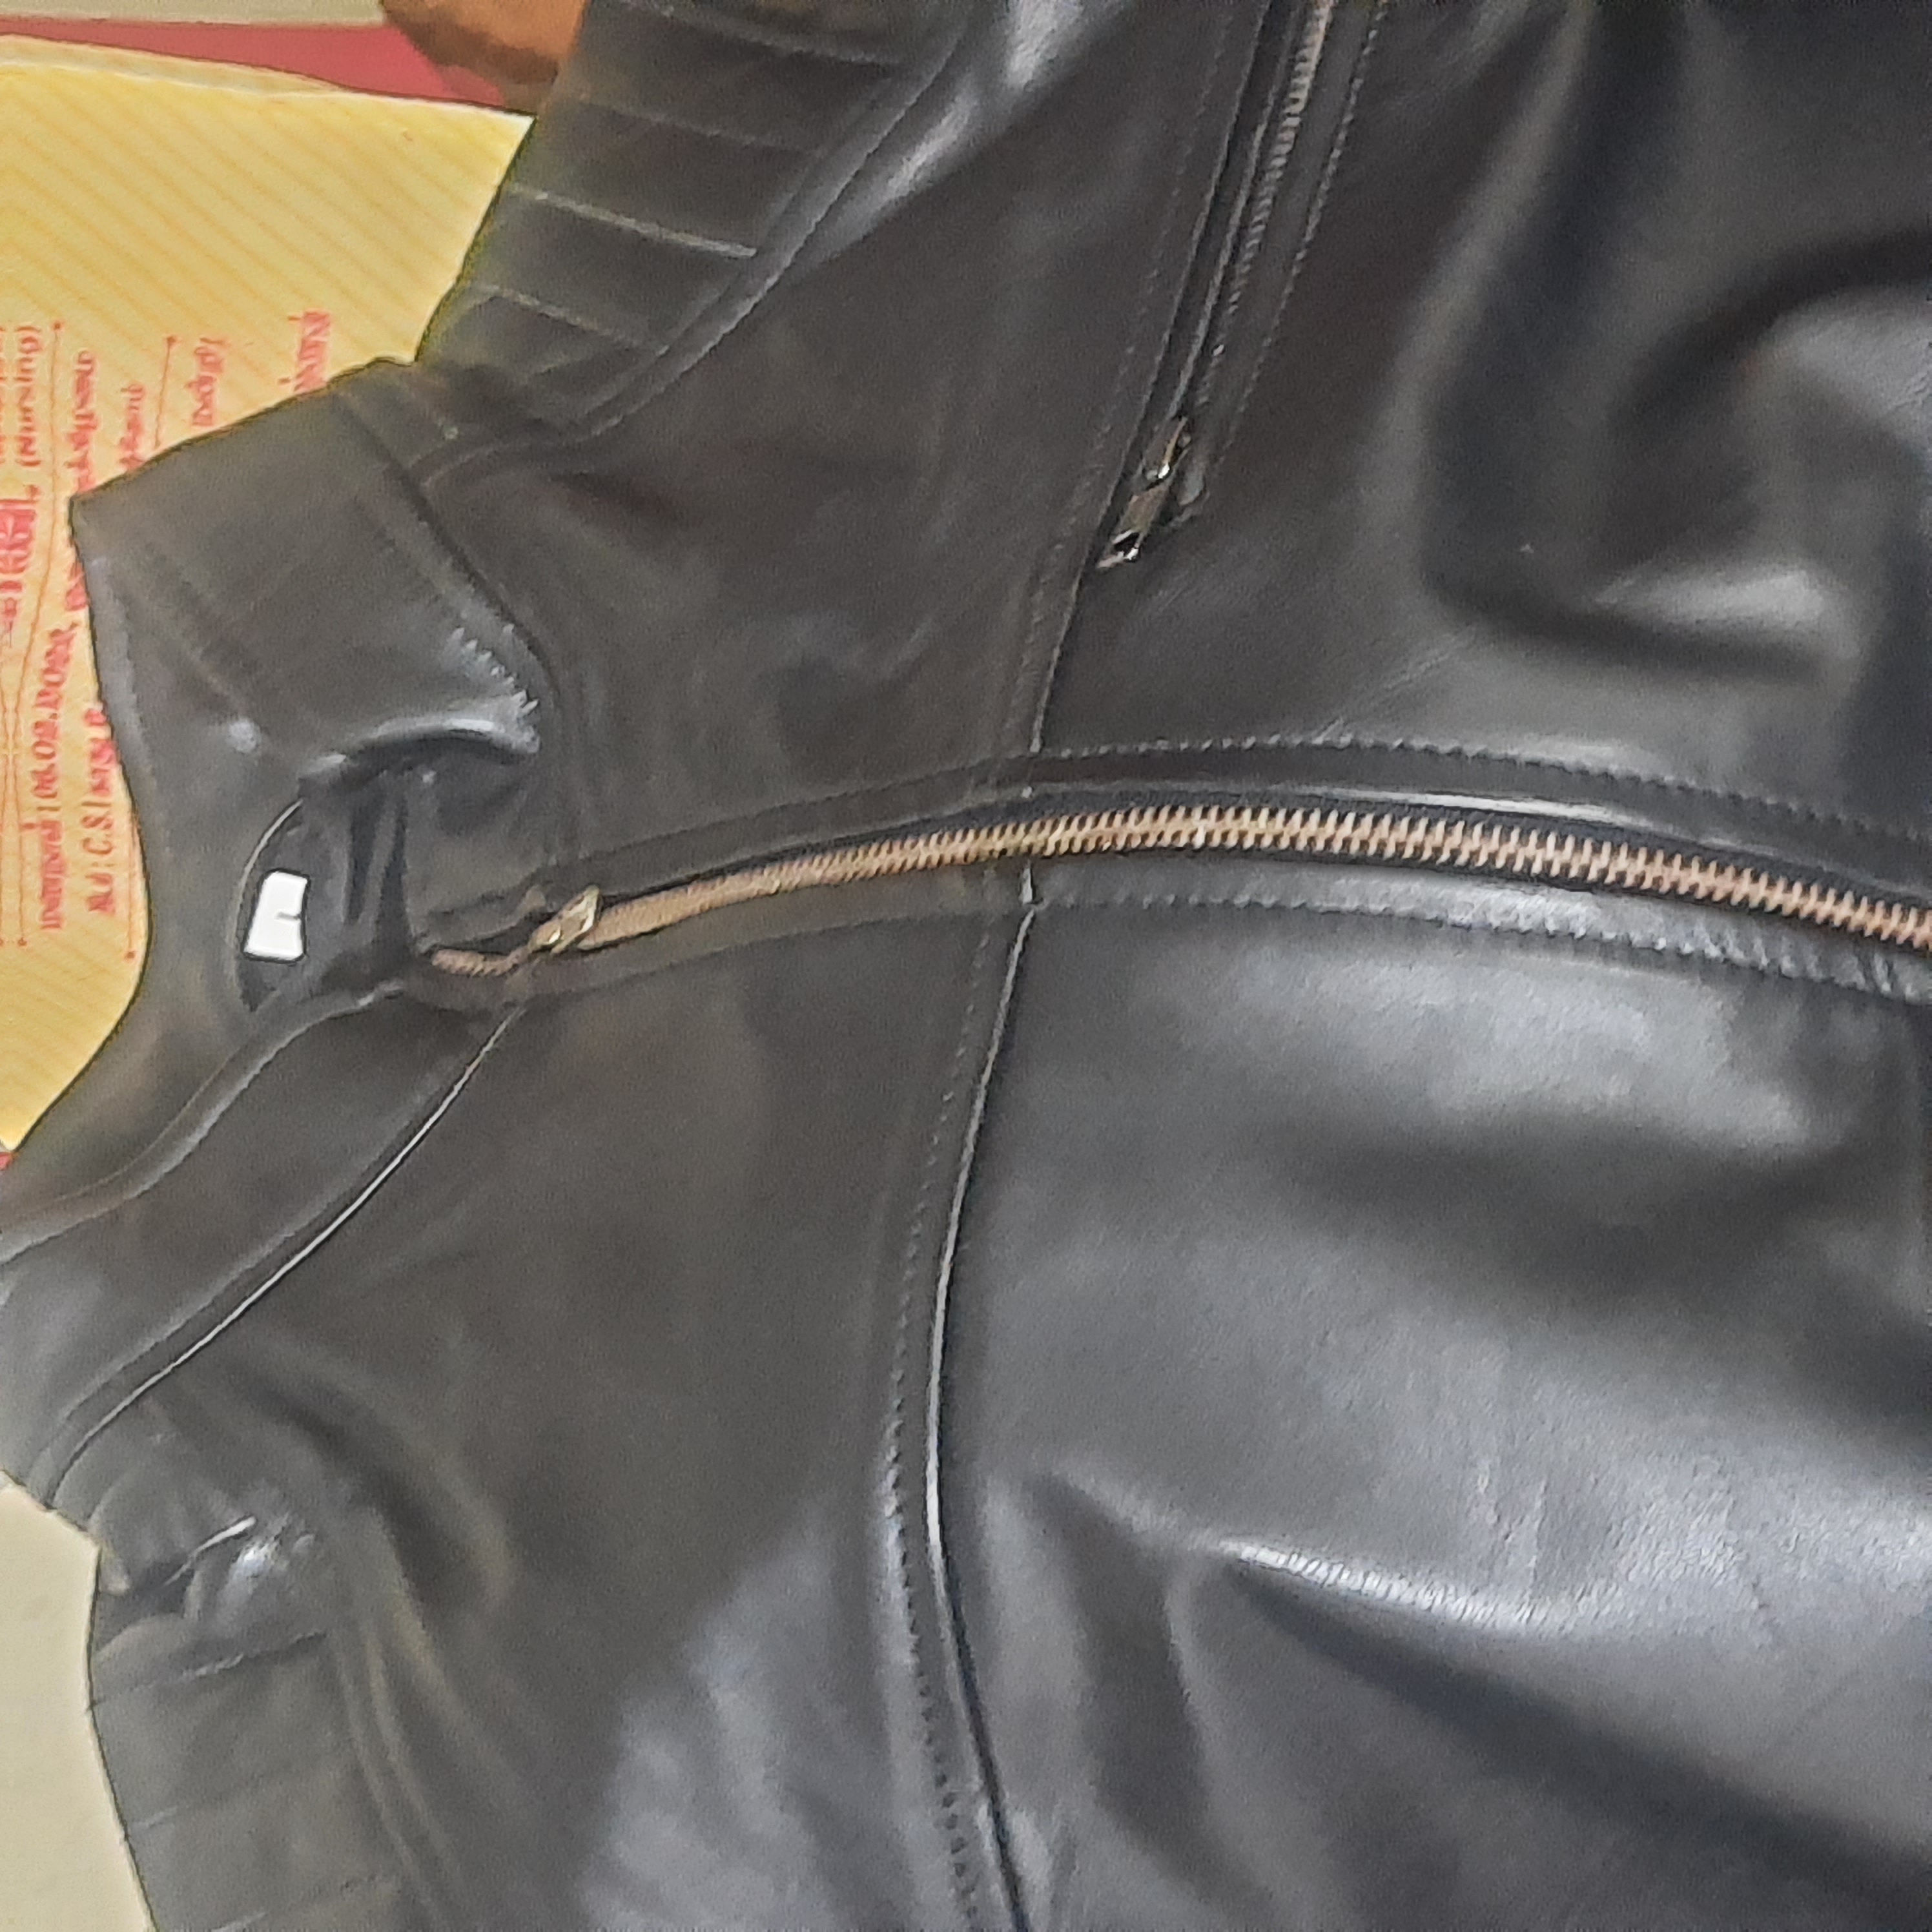 Hatari Leather Fashions